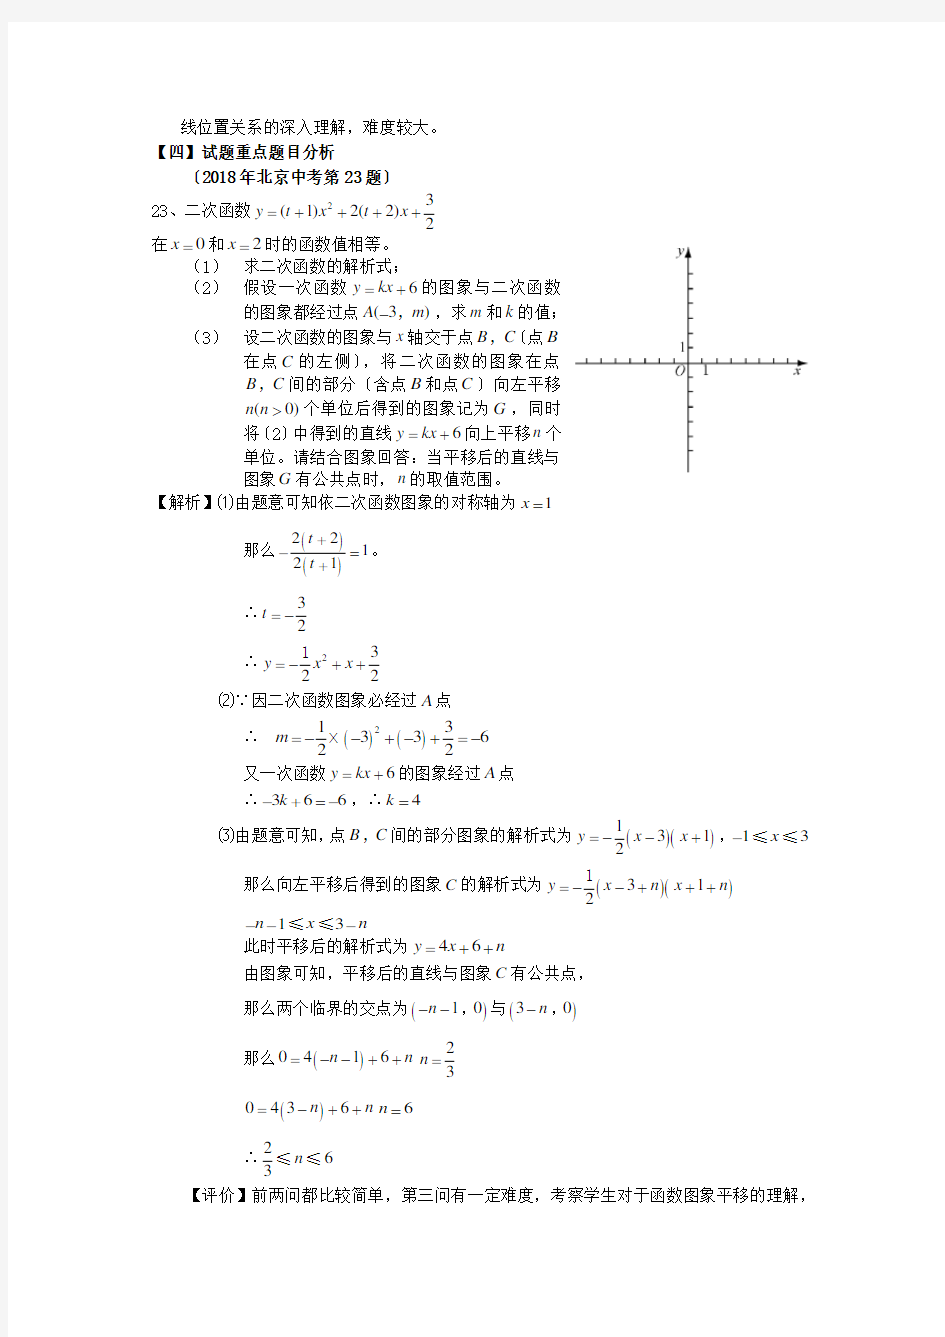 (完整版)北京2019中考试卷分析-数学